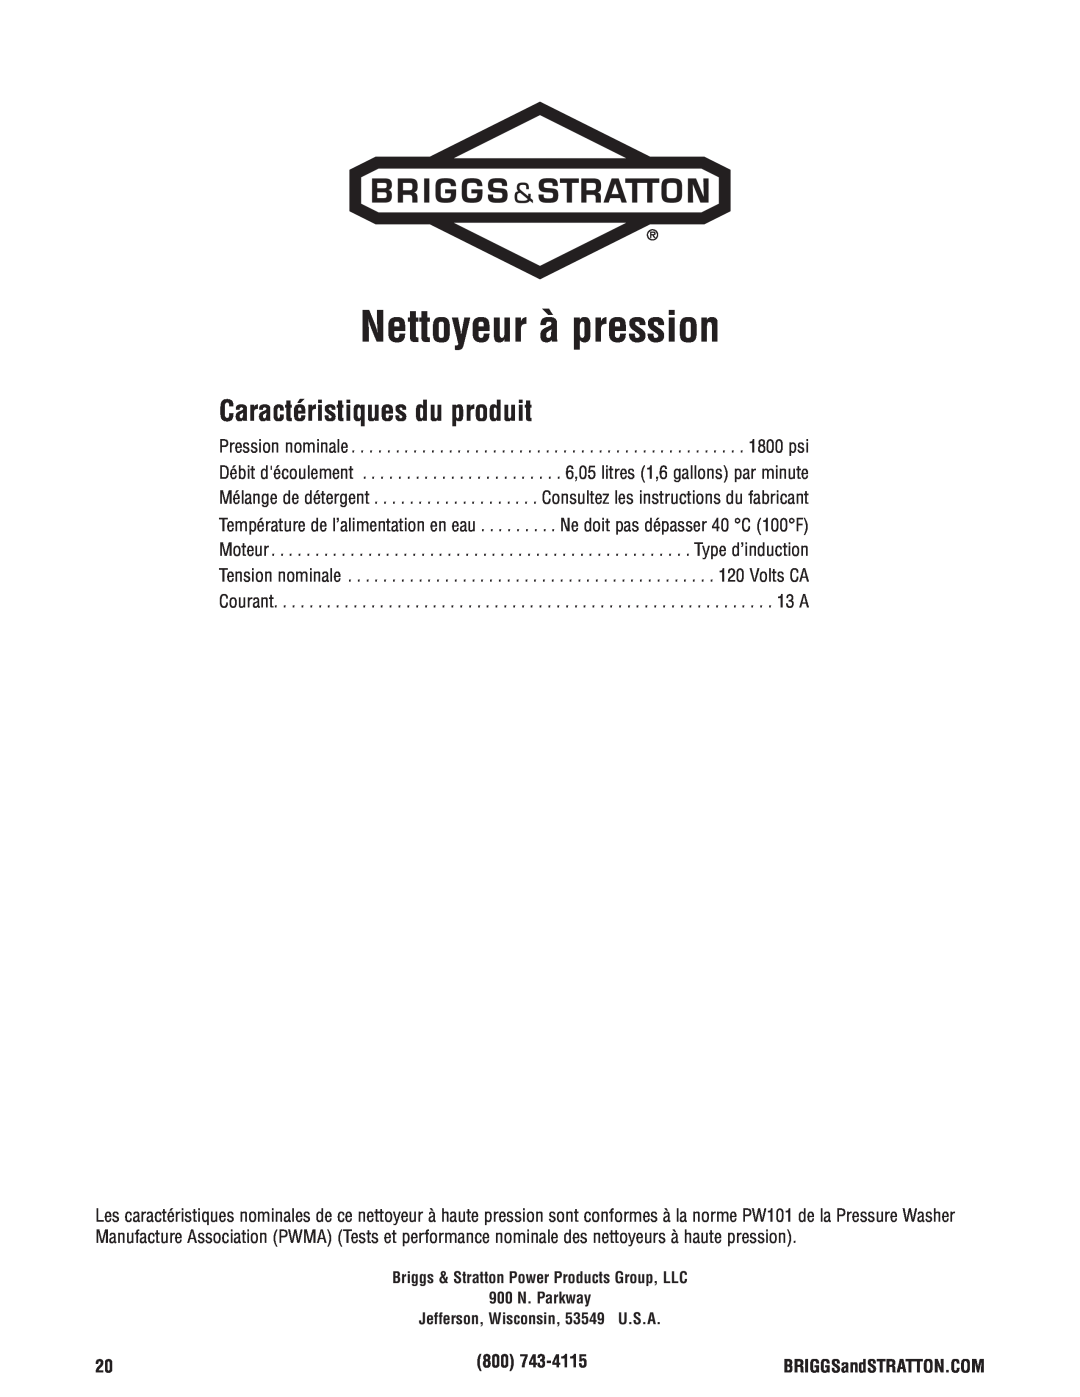 Briggs & Stratton Electric Pressure Washer manual Caractéristiques du produit, Nettoyeur à pression 